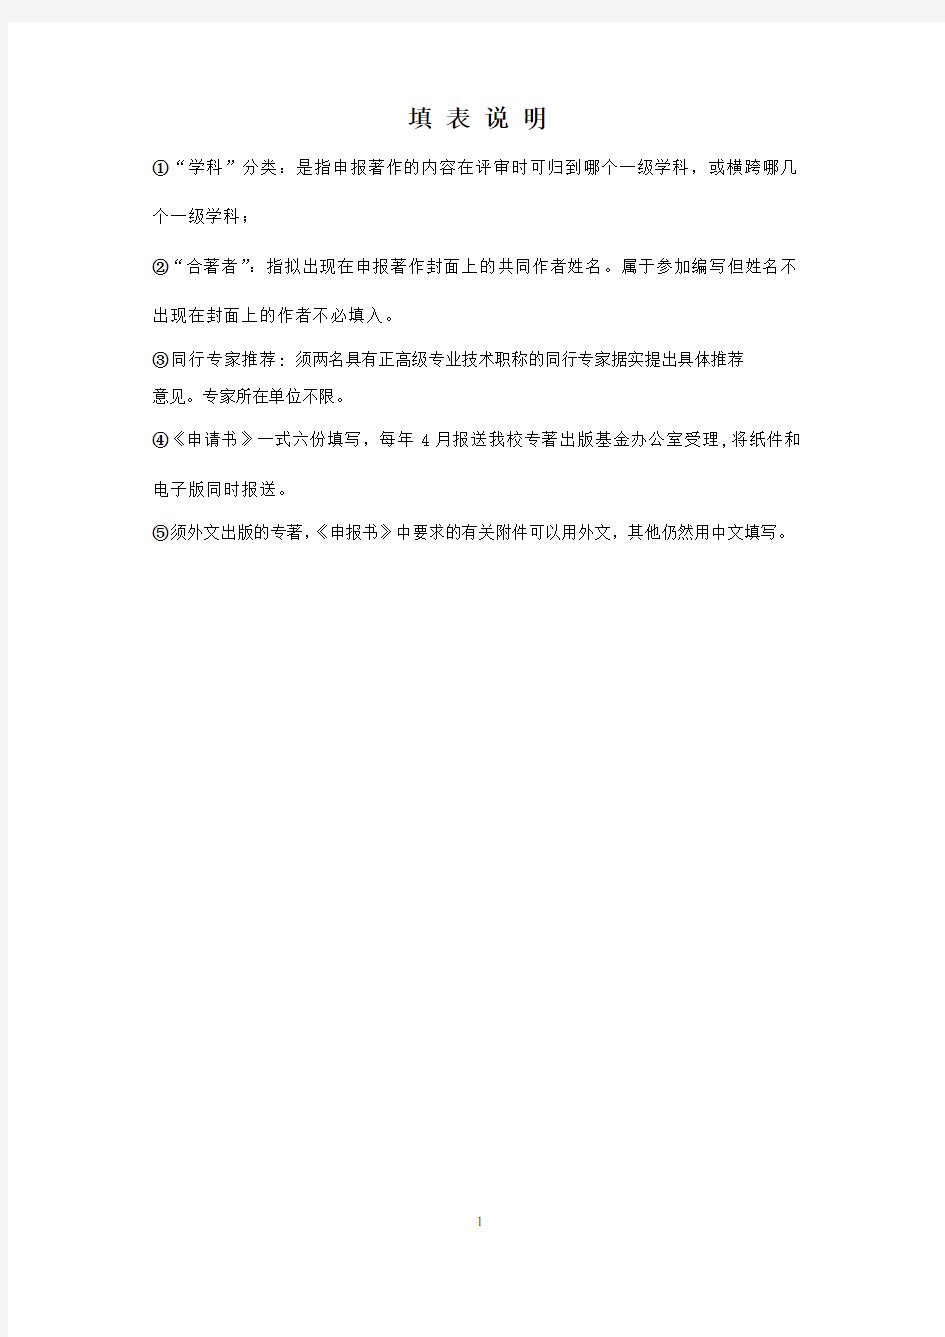 (完整版)中国石油大学(北京)学术专著出版基金申请书